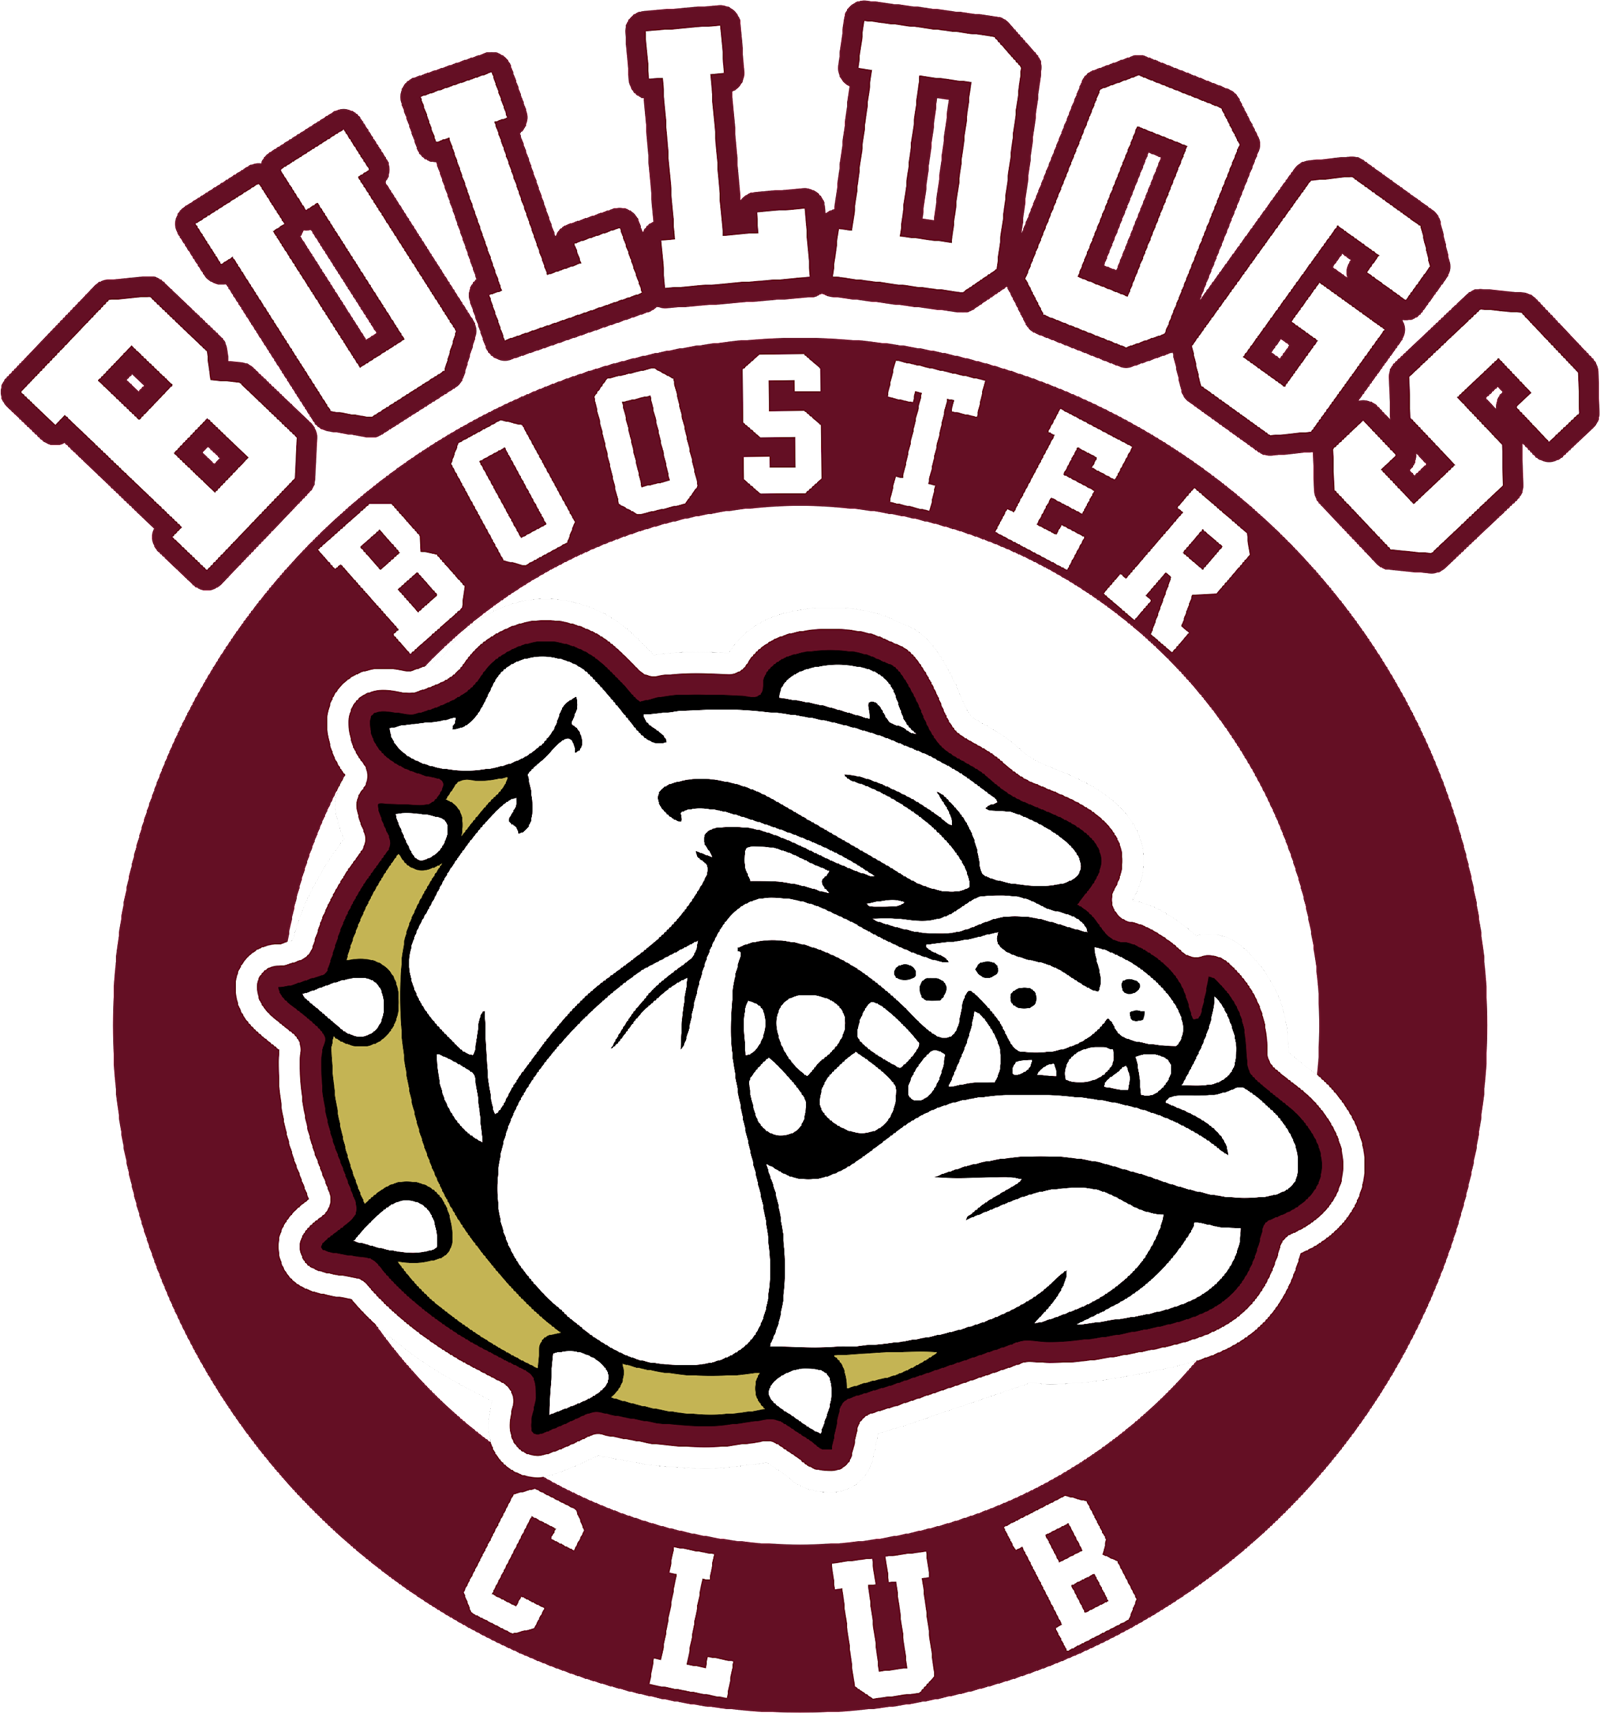 Booster Club Logo